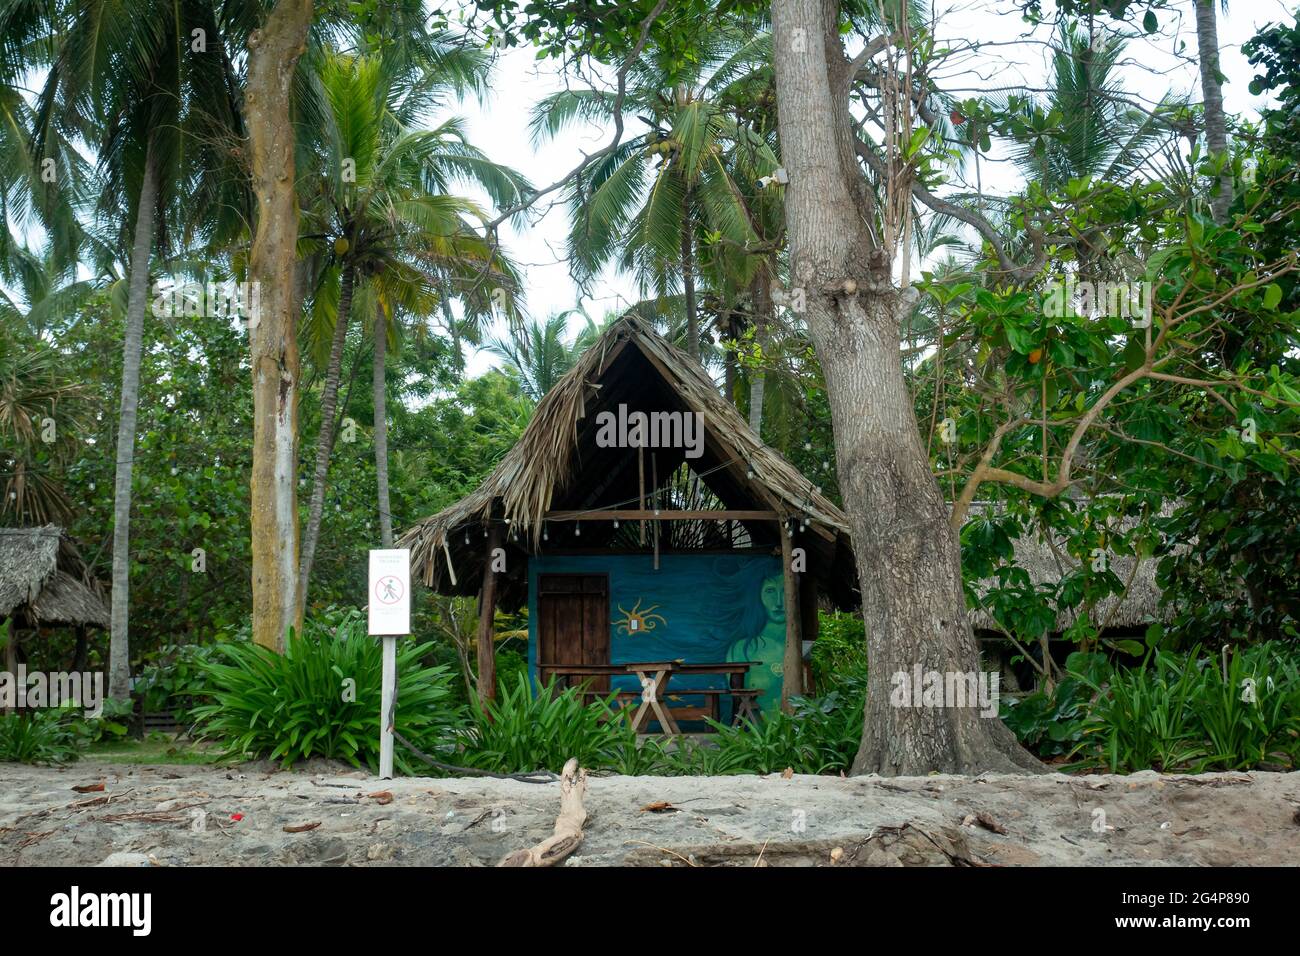 Palomino, la Guajira, Colombia - Maggio 24 2021: Piccola Casa ecologica circondata da vegetazione, un sacco di Palmeri e altri alberi vicino al mare Foto Stock